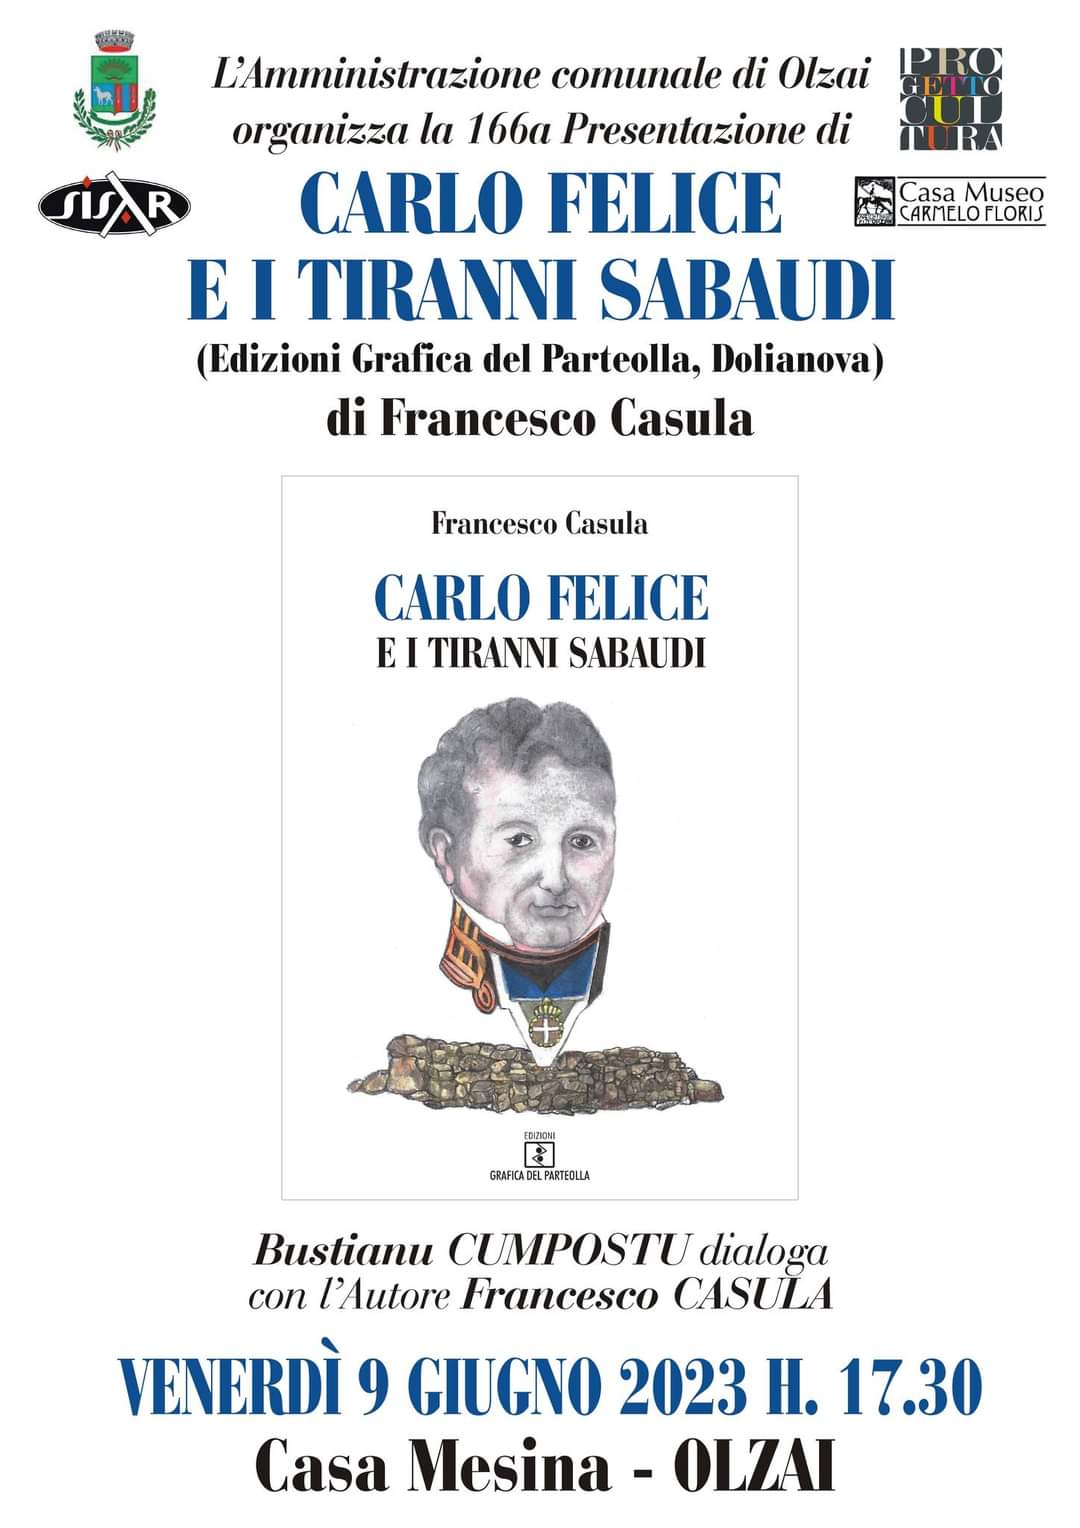 INCONTRI LETTERARI   9/6/2023 ore 17,30 F. Casula presenta 'Carlo Felice e i tiranni sabaudi'